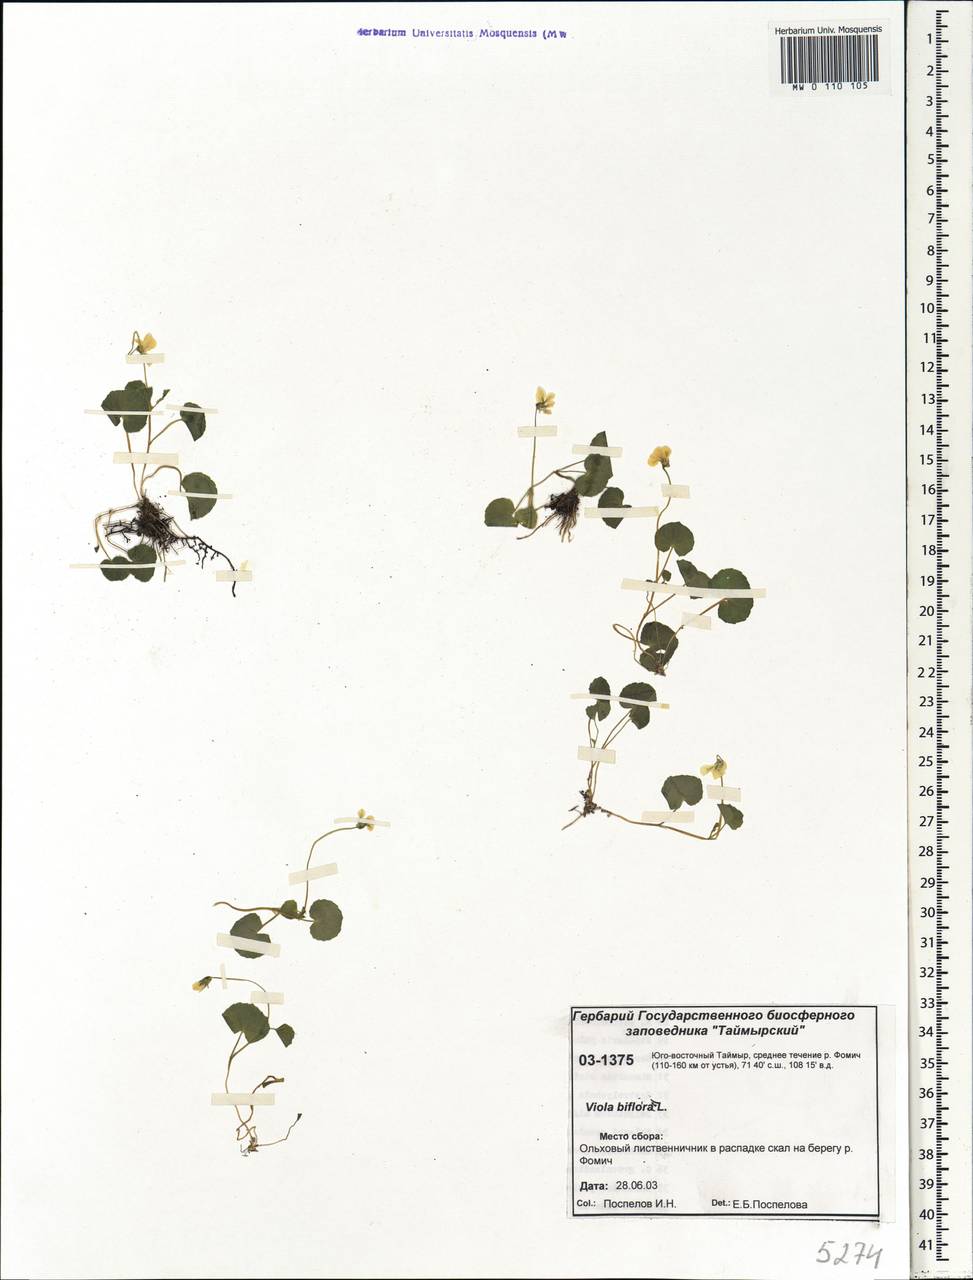 Viola biflora L., Siberia, Central Siberia (S3) (Russia)